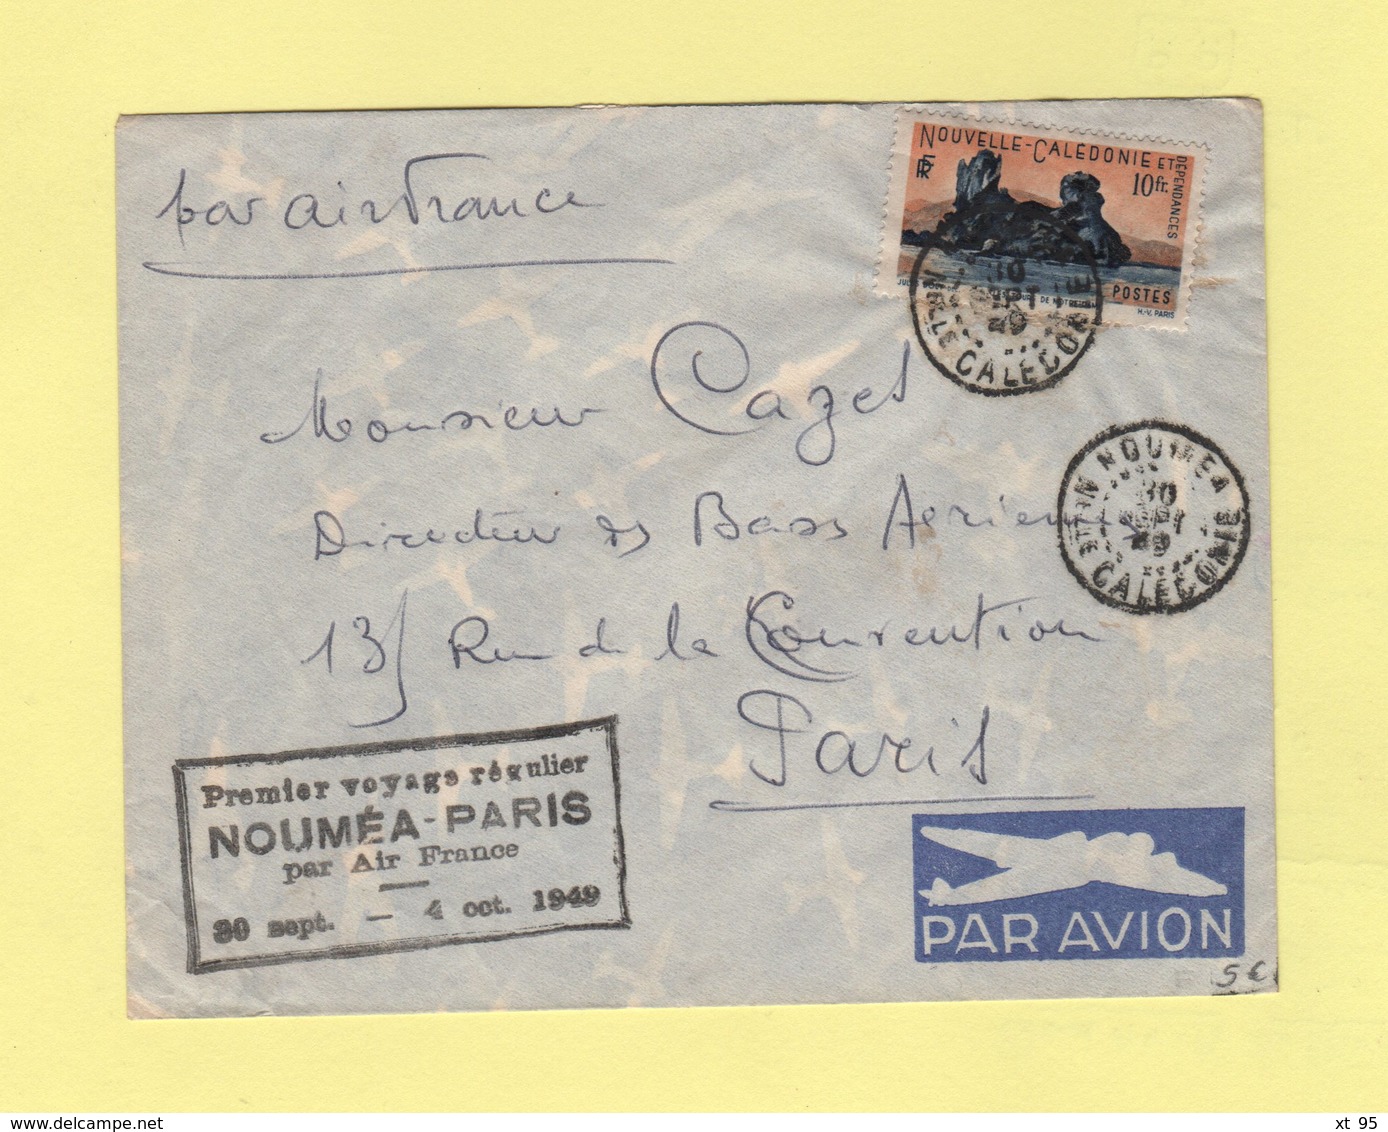 Nouvelle Caledonie - Noumea - Premier Voyage Regulier Par Air France - 30 Sept 1949 - Covers & Documents